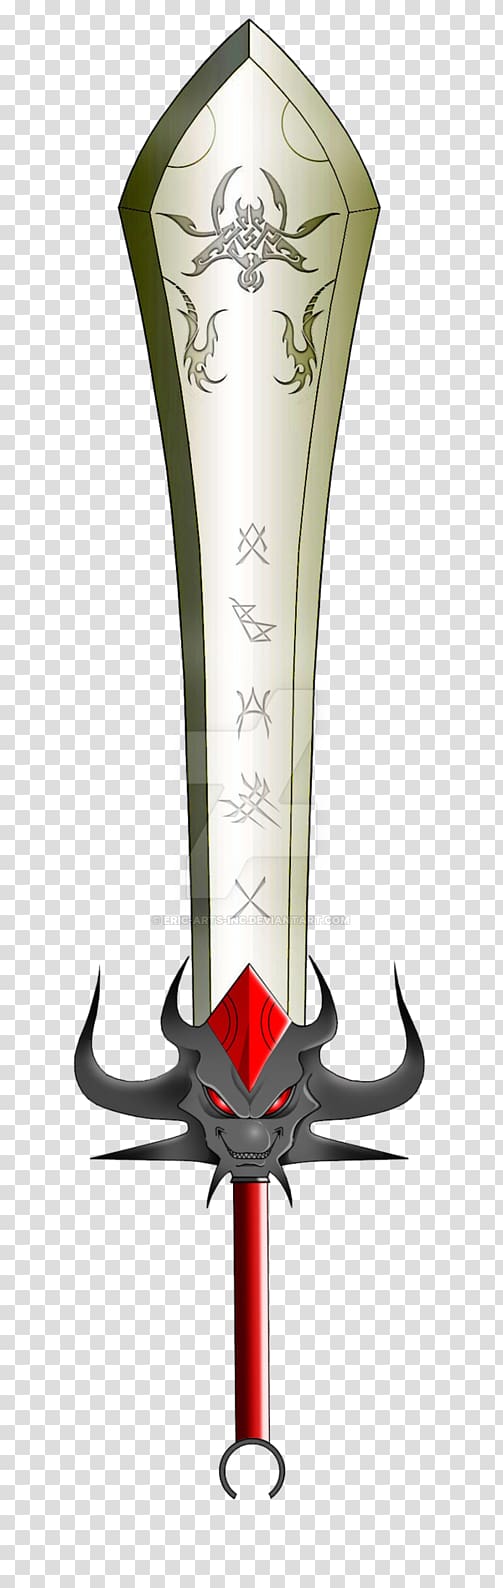 Weapon Sword Font, despot transparent background PNG clipart